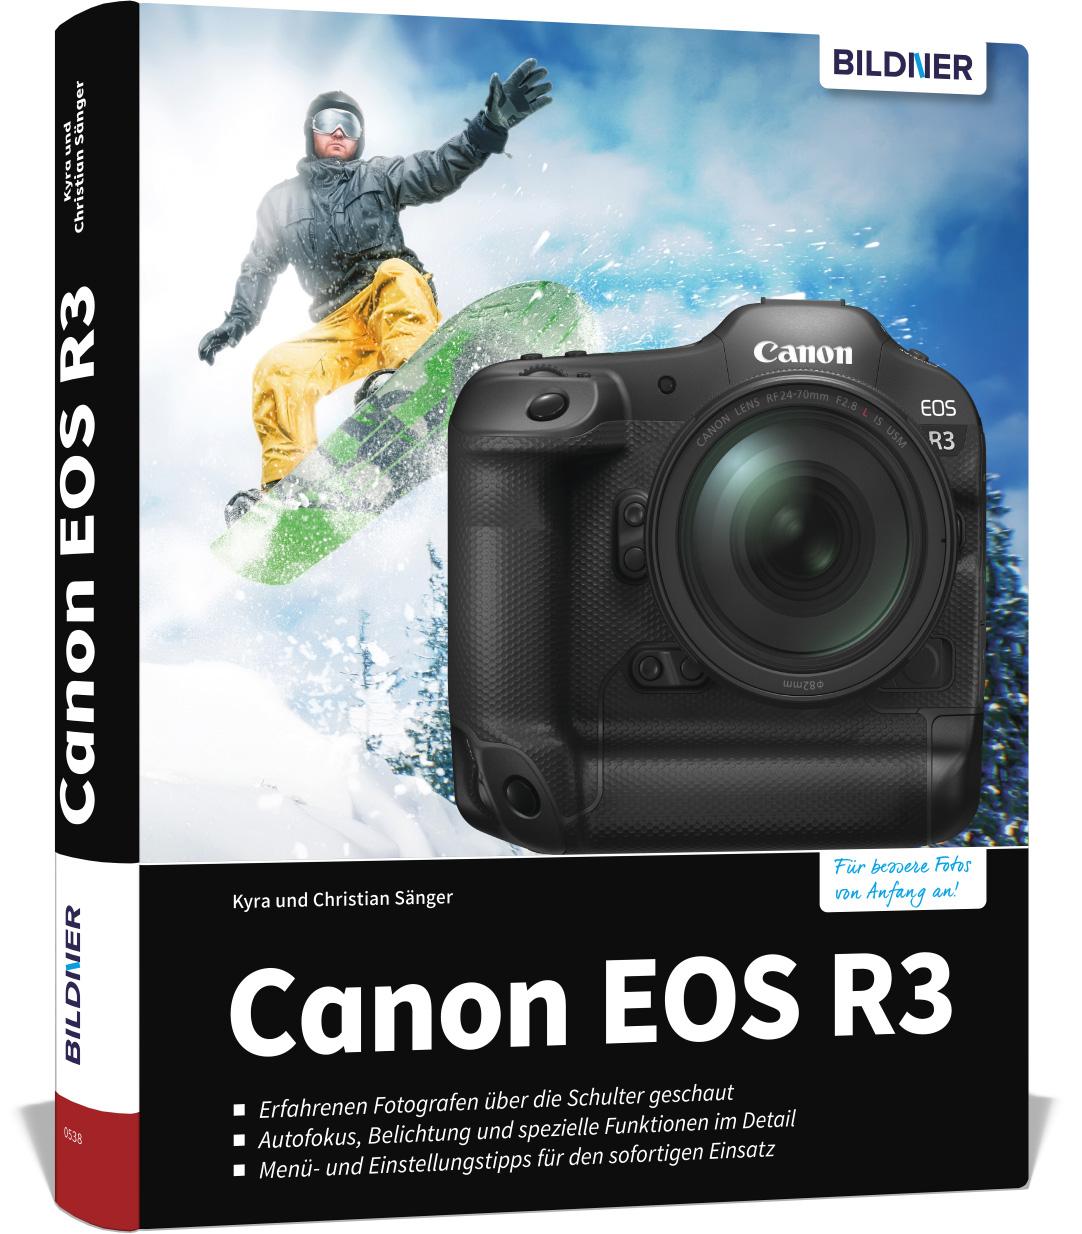 Canon EOS R3 Know-how und Expertentipps für erstklassige Bilder - so beherrschen Sie Ihre Profi-Kamera!